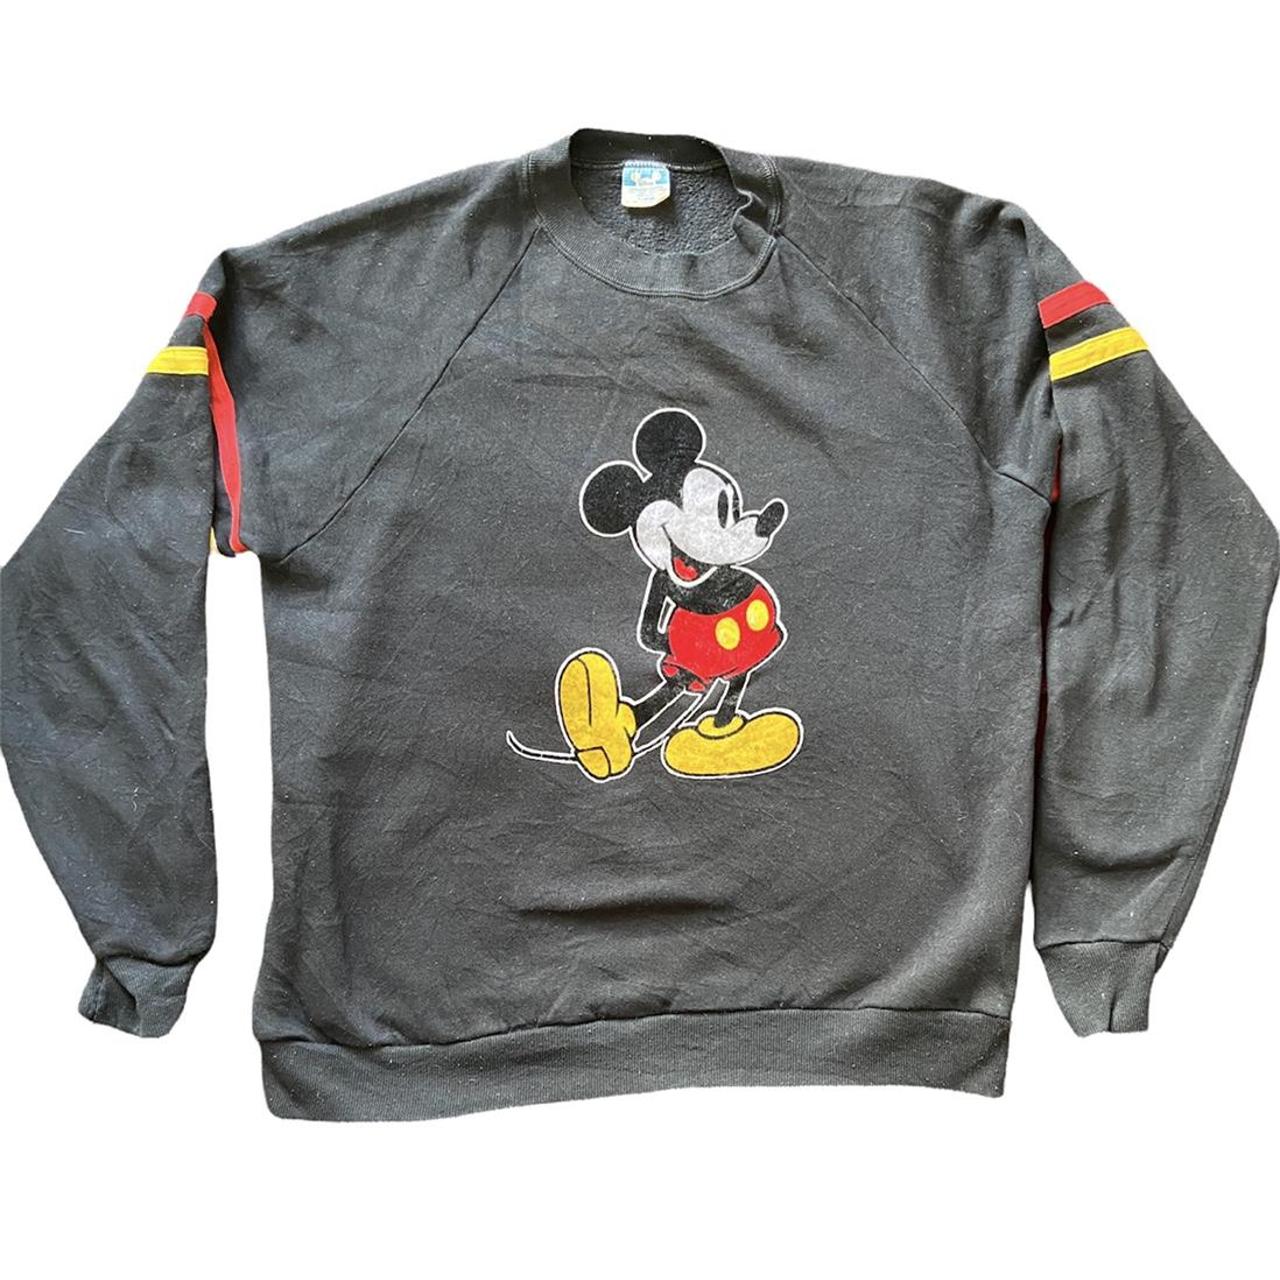 Vintage 90's Micky mouse sweater Size: XL fits like... - Depop